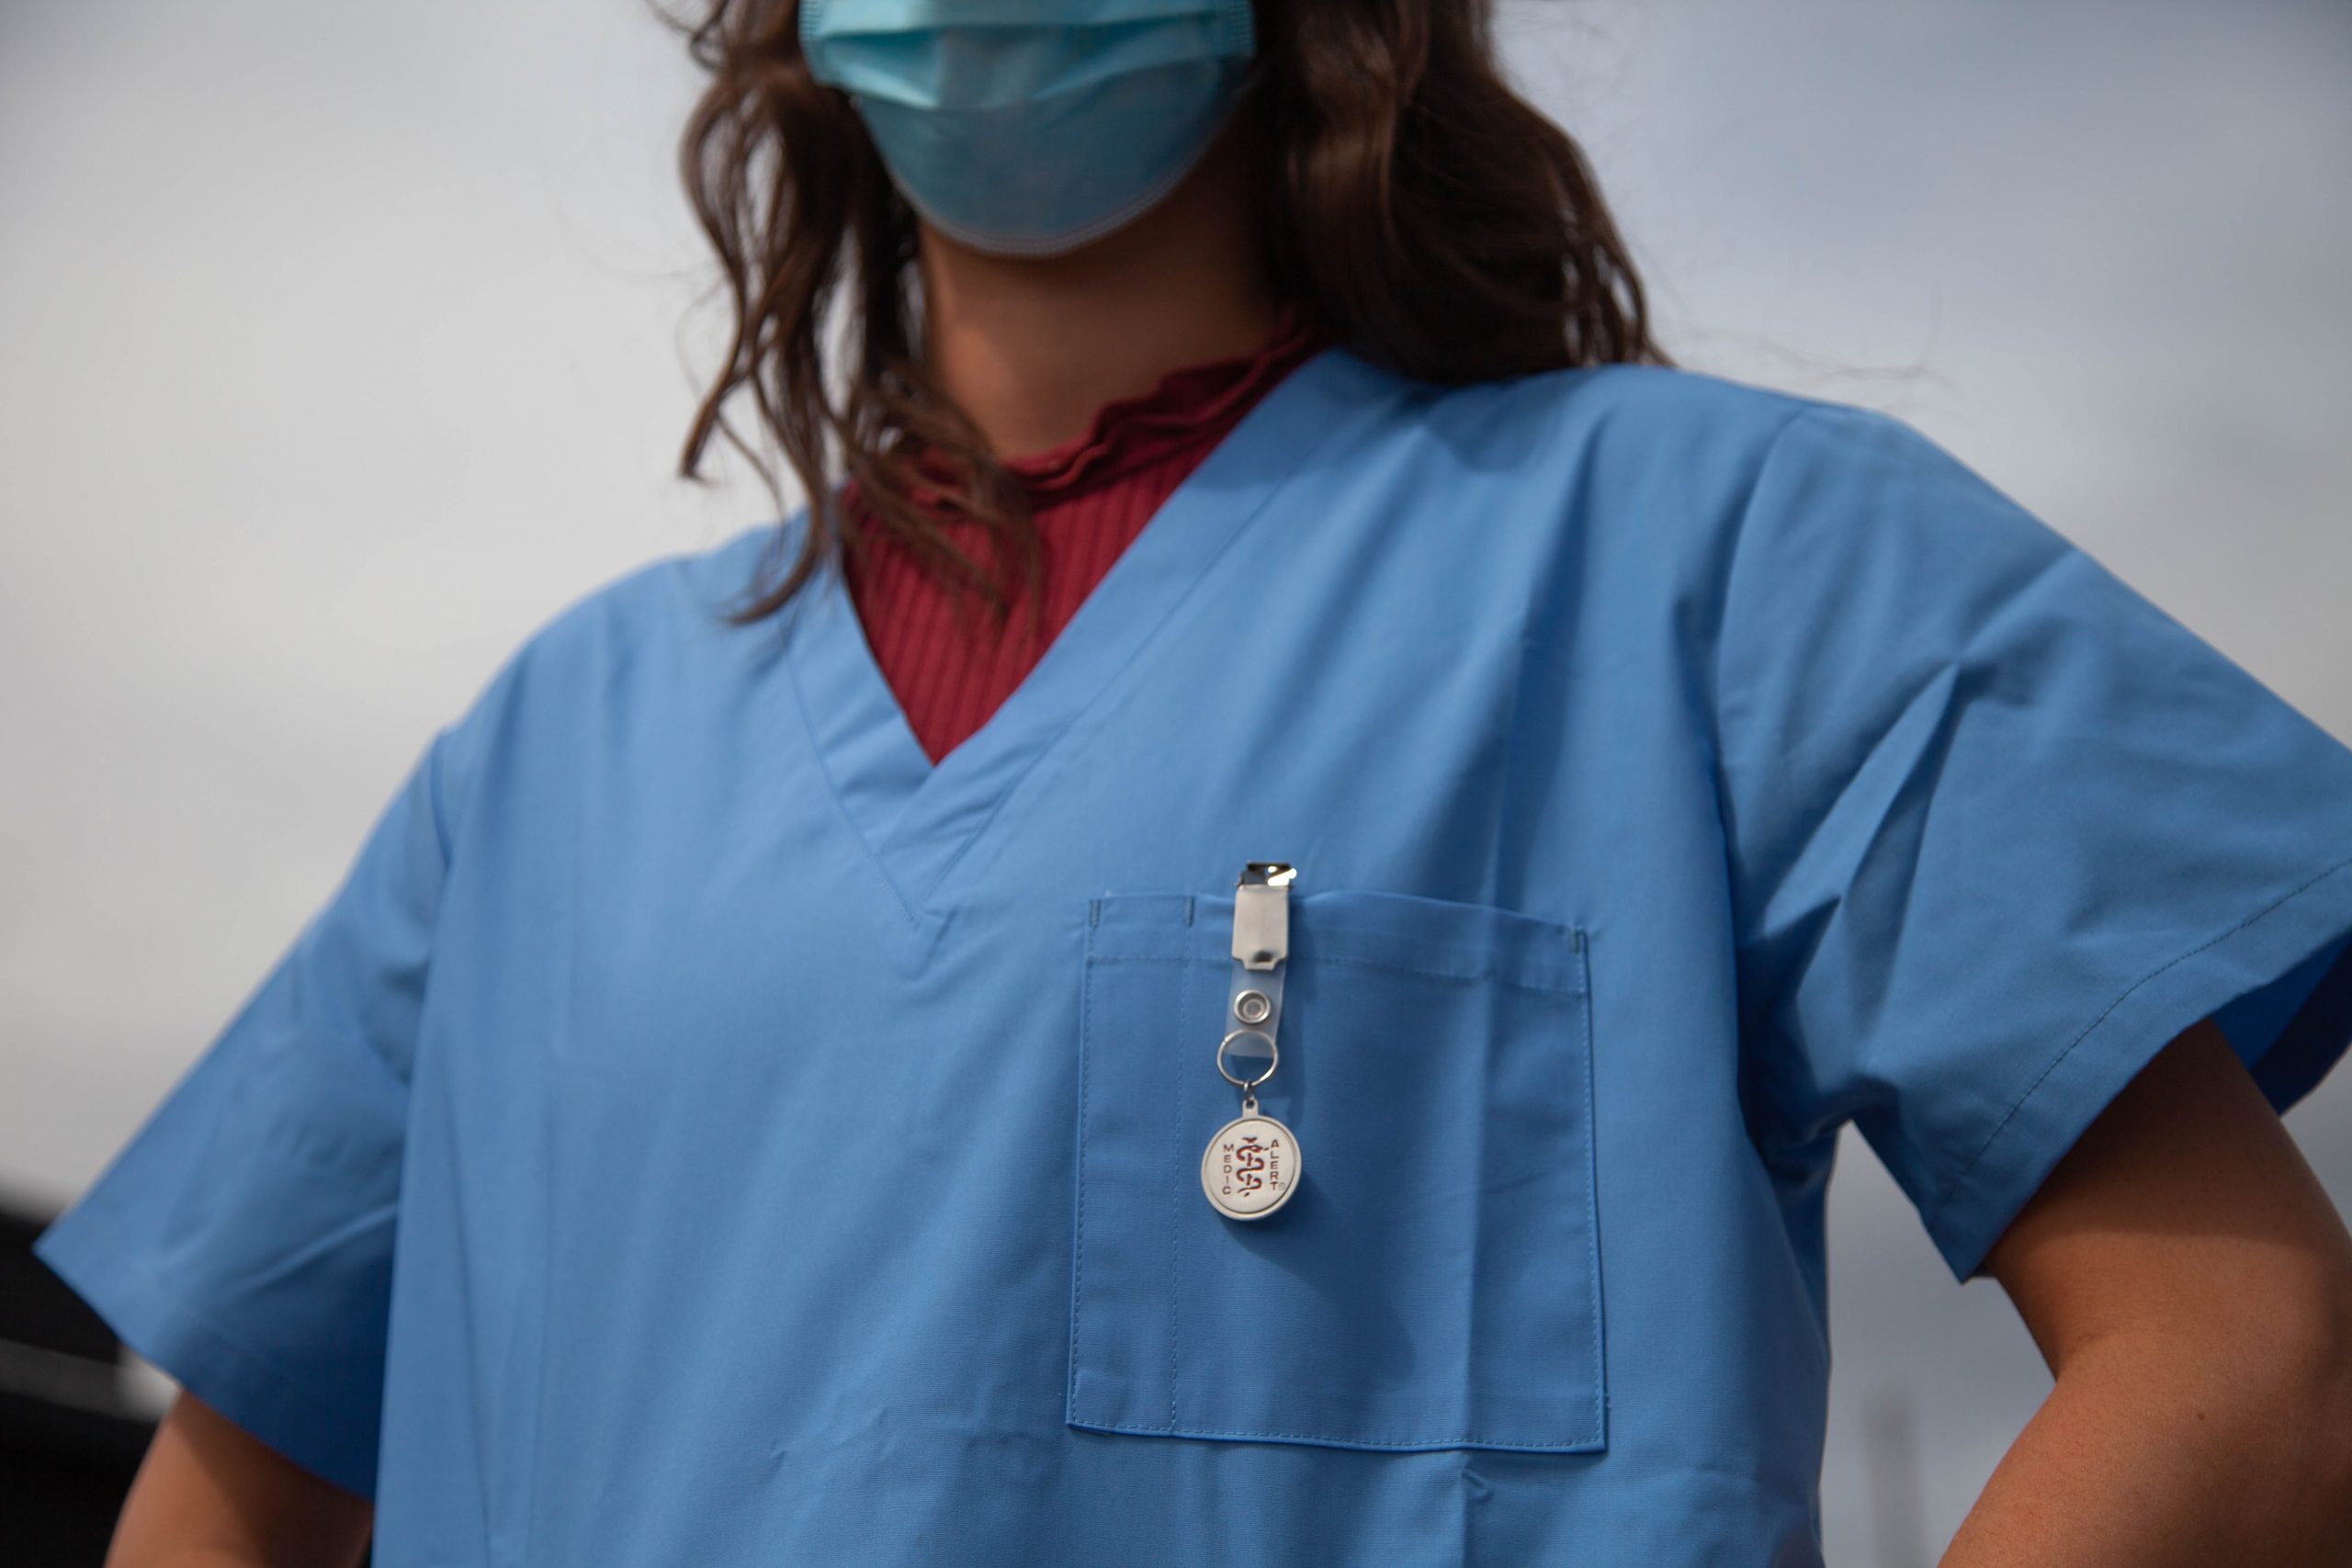 sygeplejerske praktik i udlandet